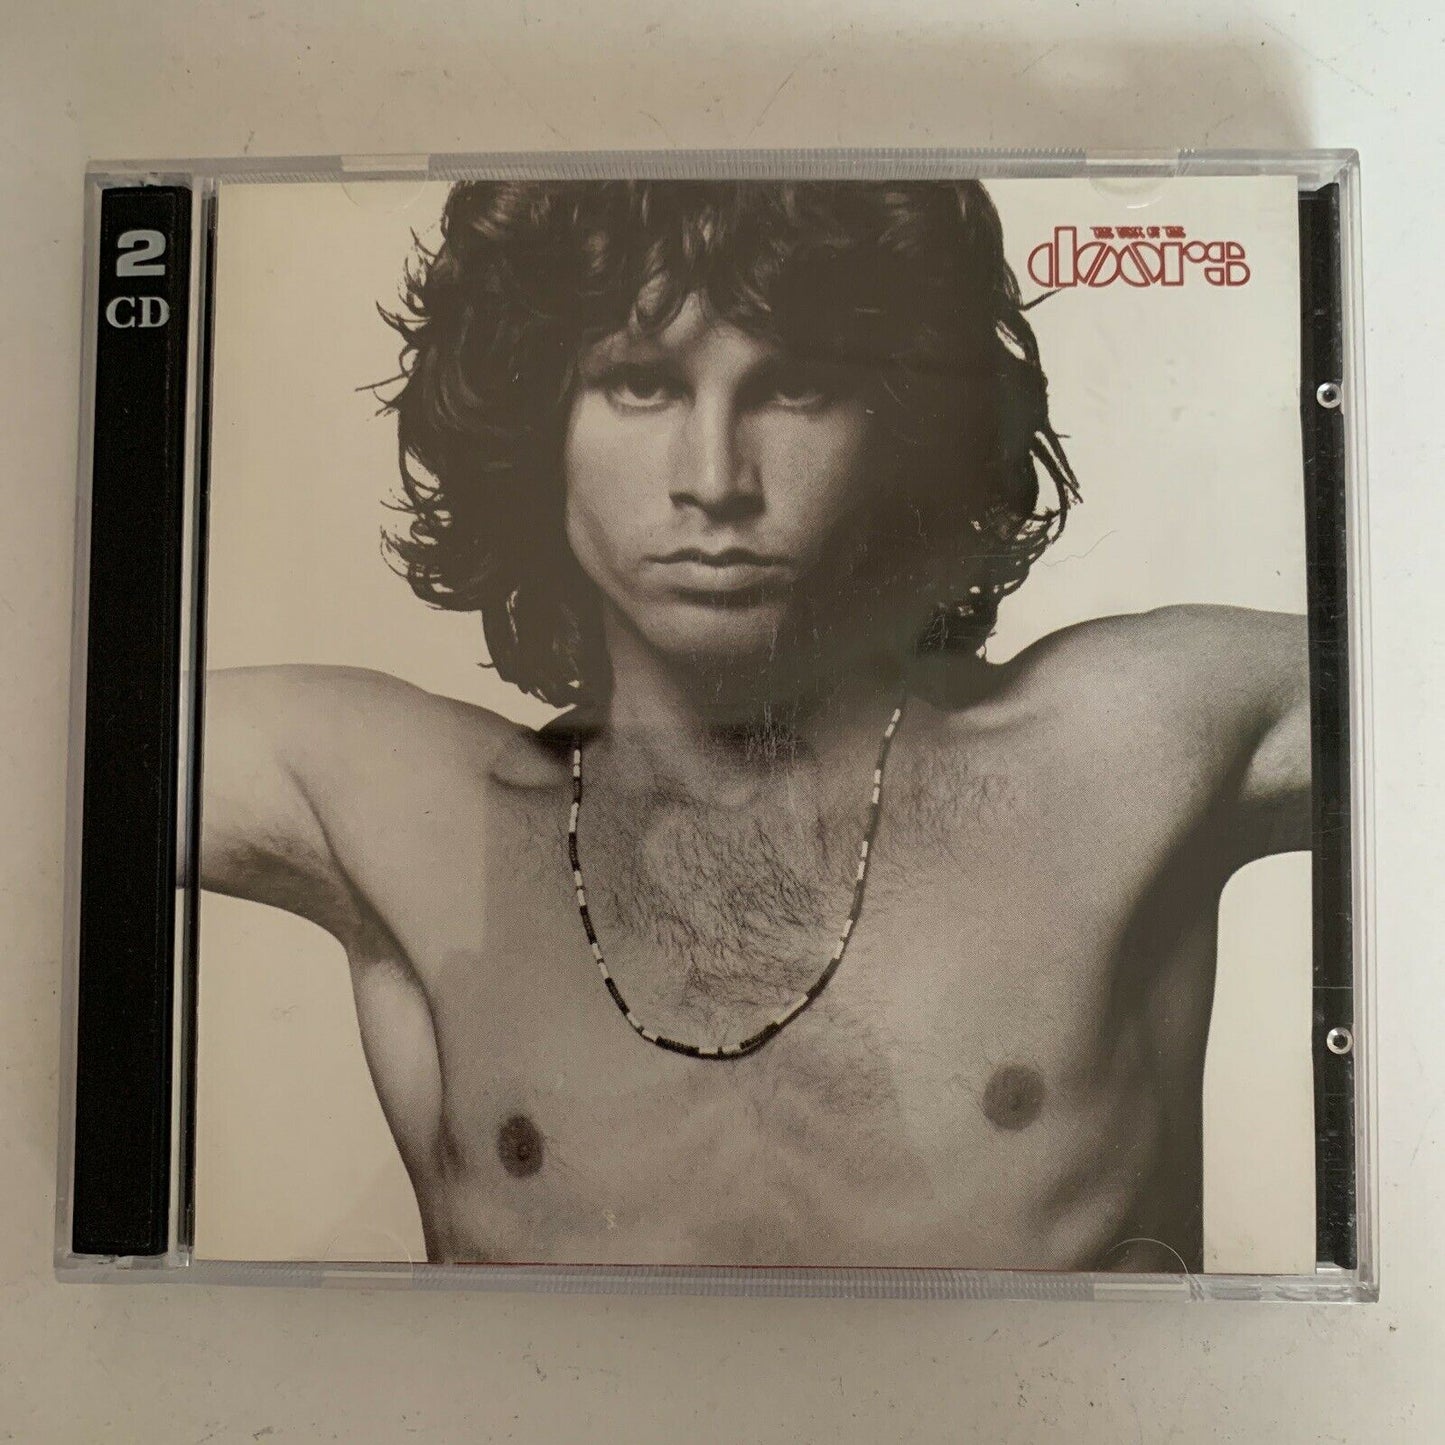 The Doors – The Best Of The Doors (CD, 2-Disc, 1985)